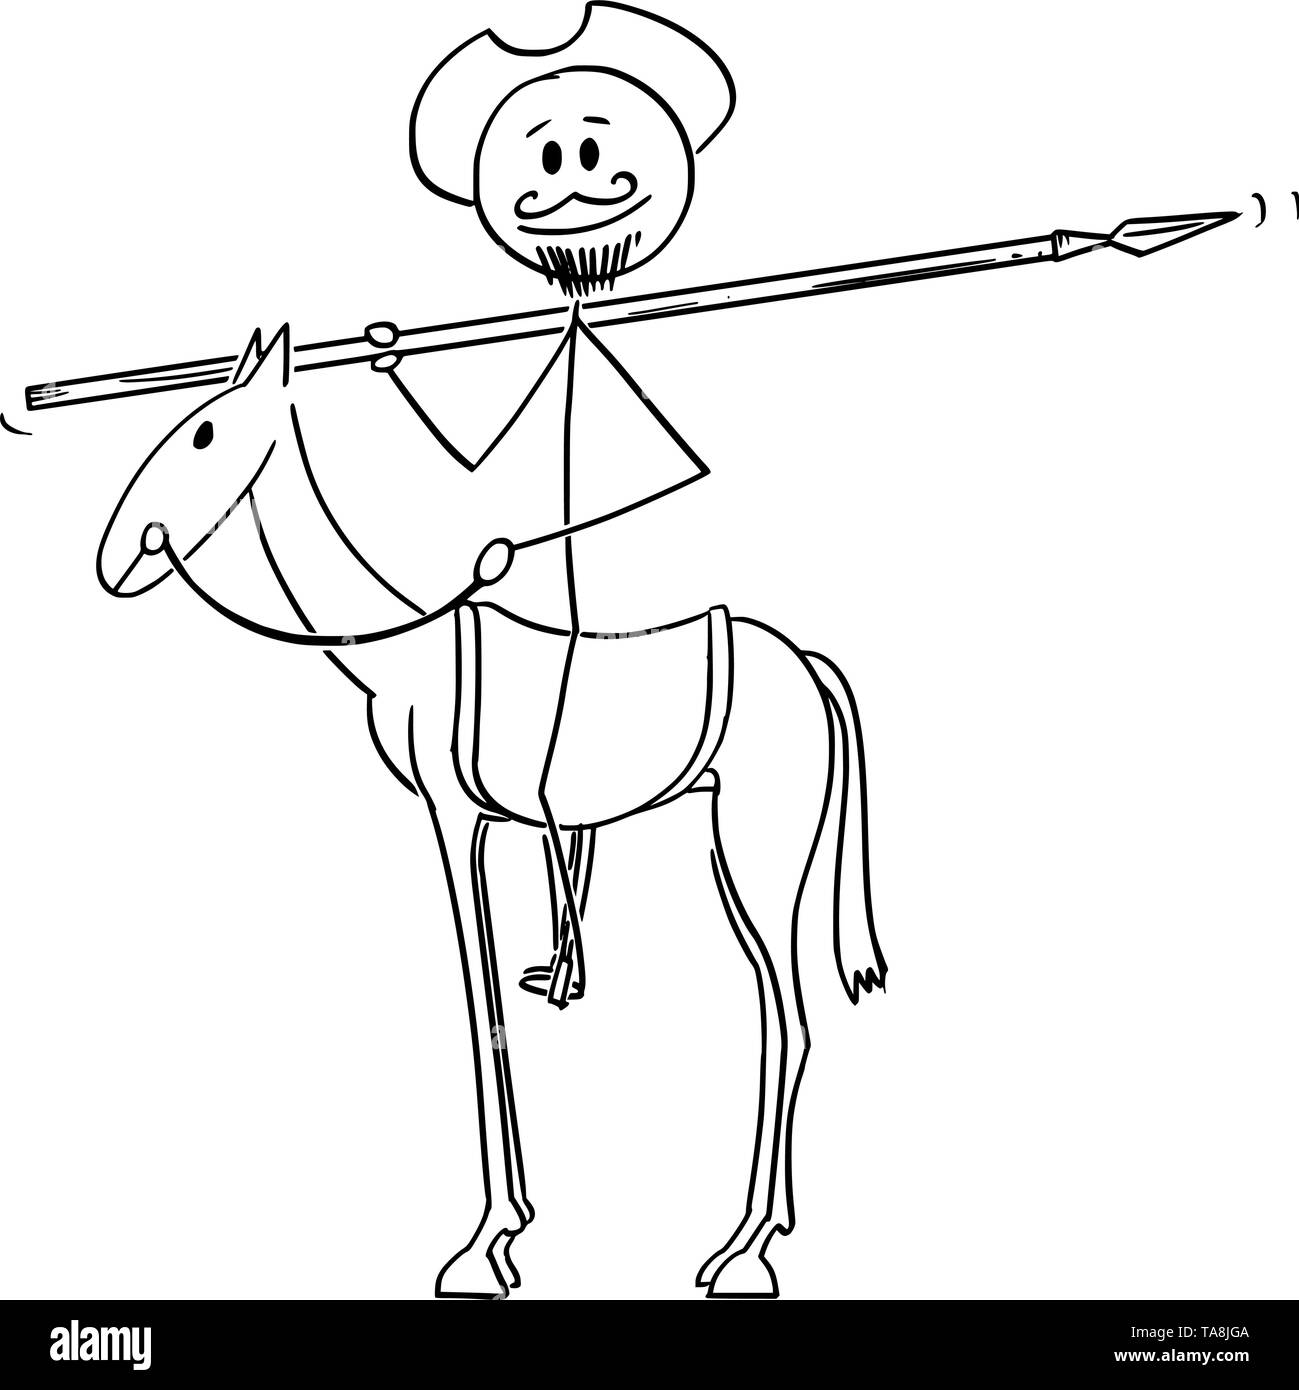 Vektor cartoon Strichmännchen Zeichnen konzeptionelle Darstellung der Ritter auf Pferd mit Windmühle auf Hintergrund - Don Quijote Charakter aus dem Buch Stock Vektor